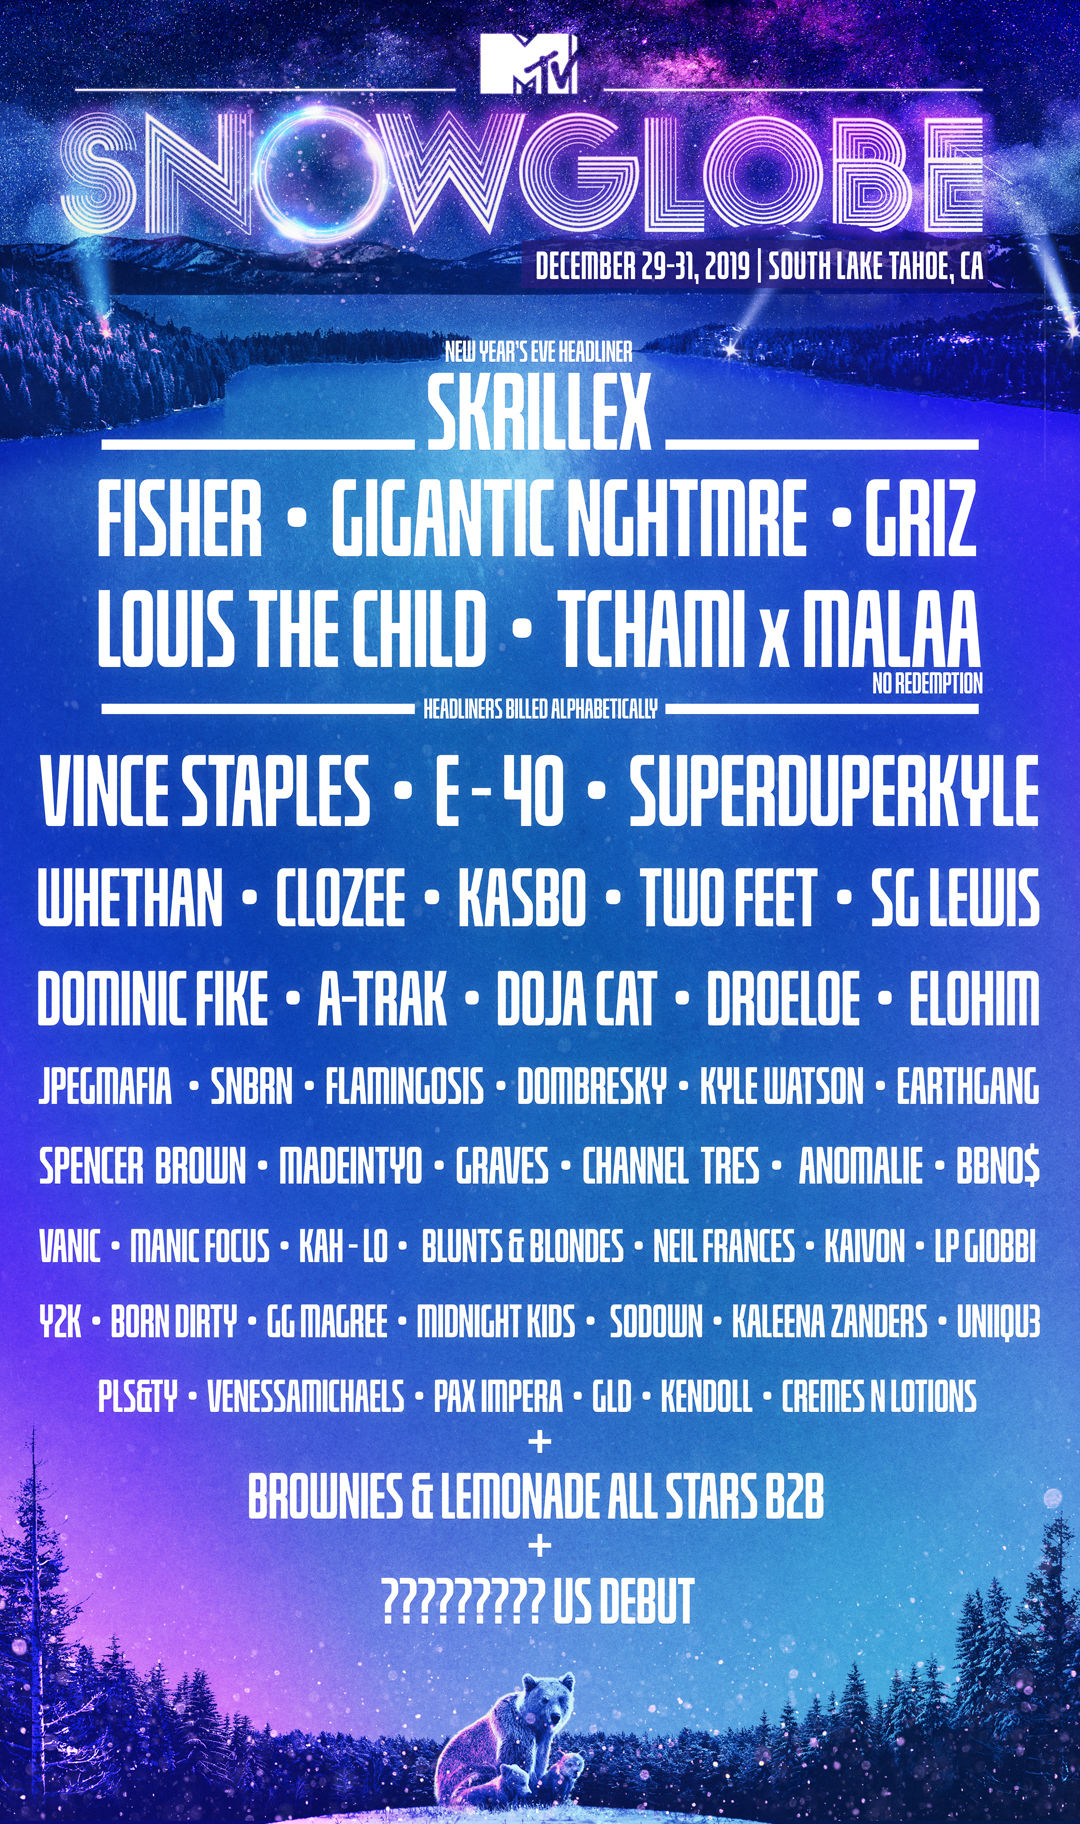 SnowGlobe Music Festival 2019